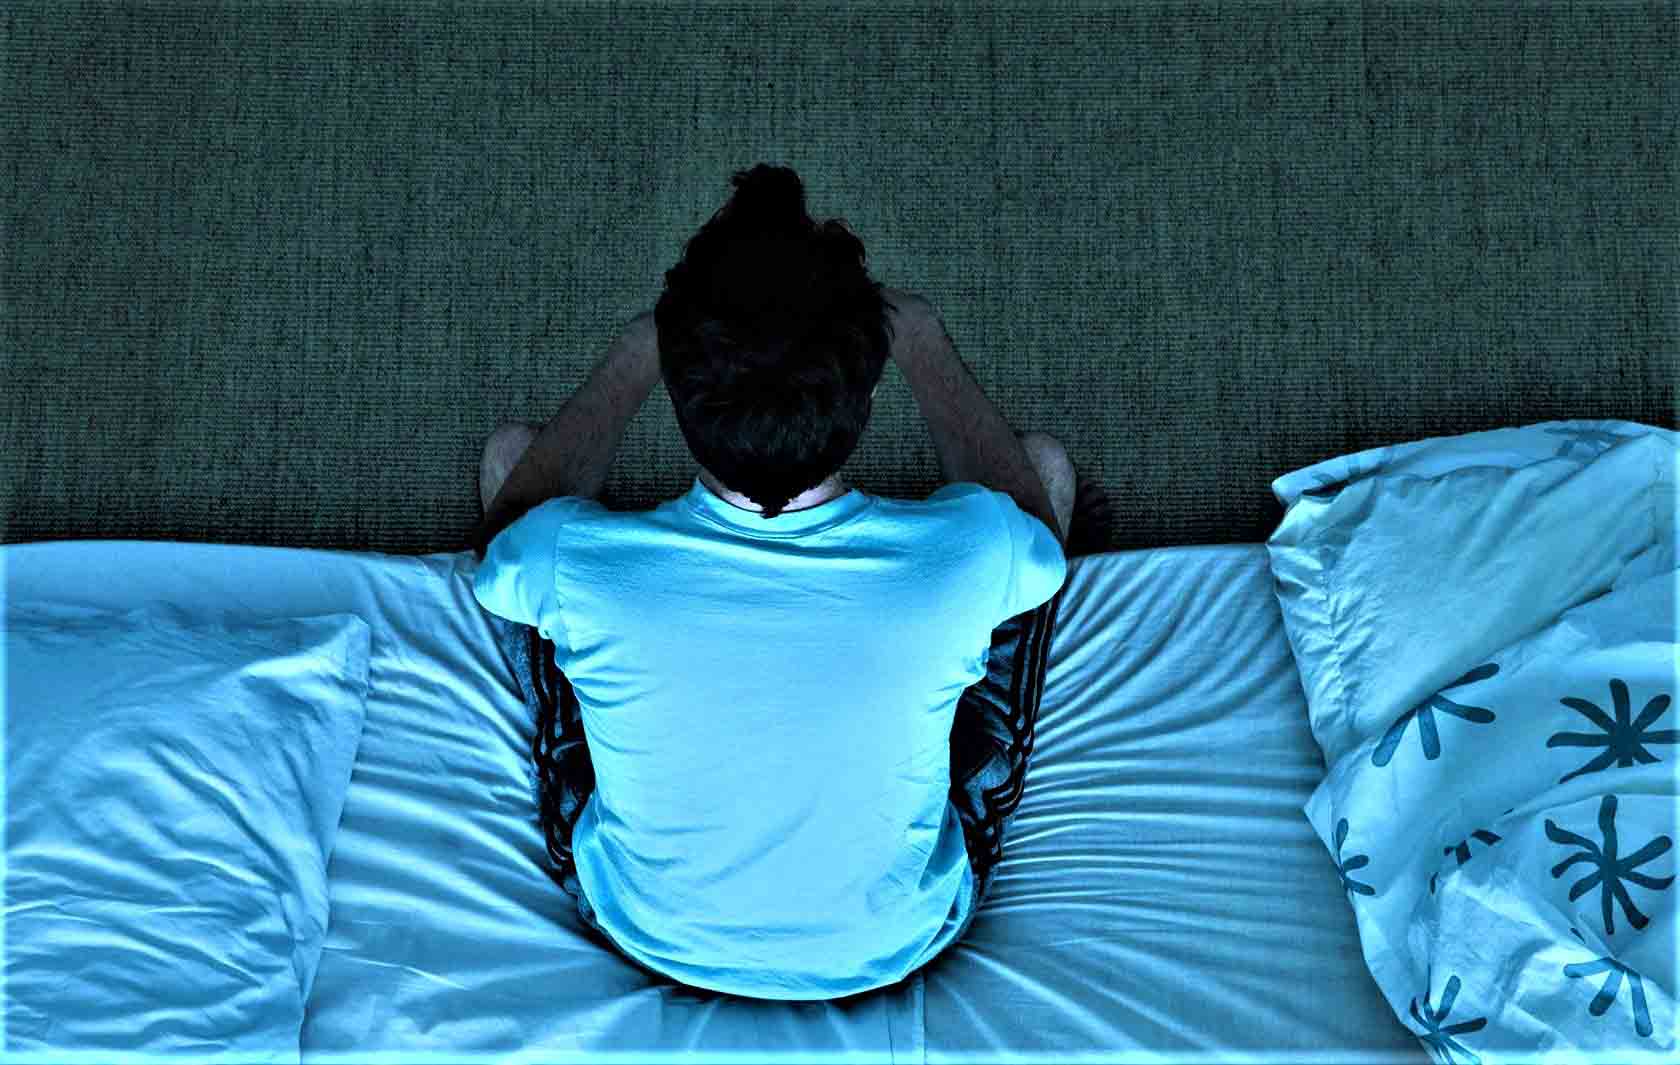 Ответы к тестам НМО: "Сестринские вмешательства при нарушениях сна"